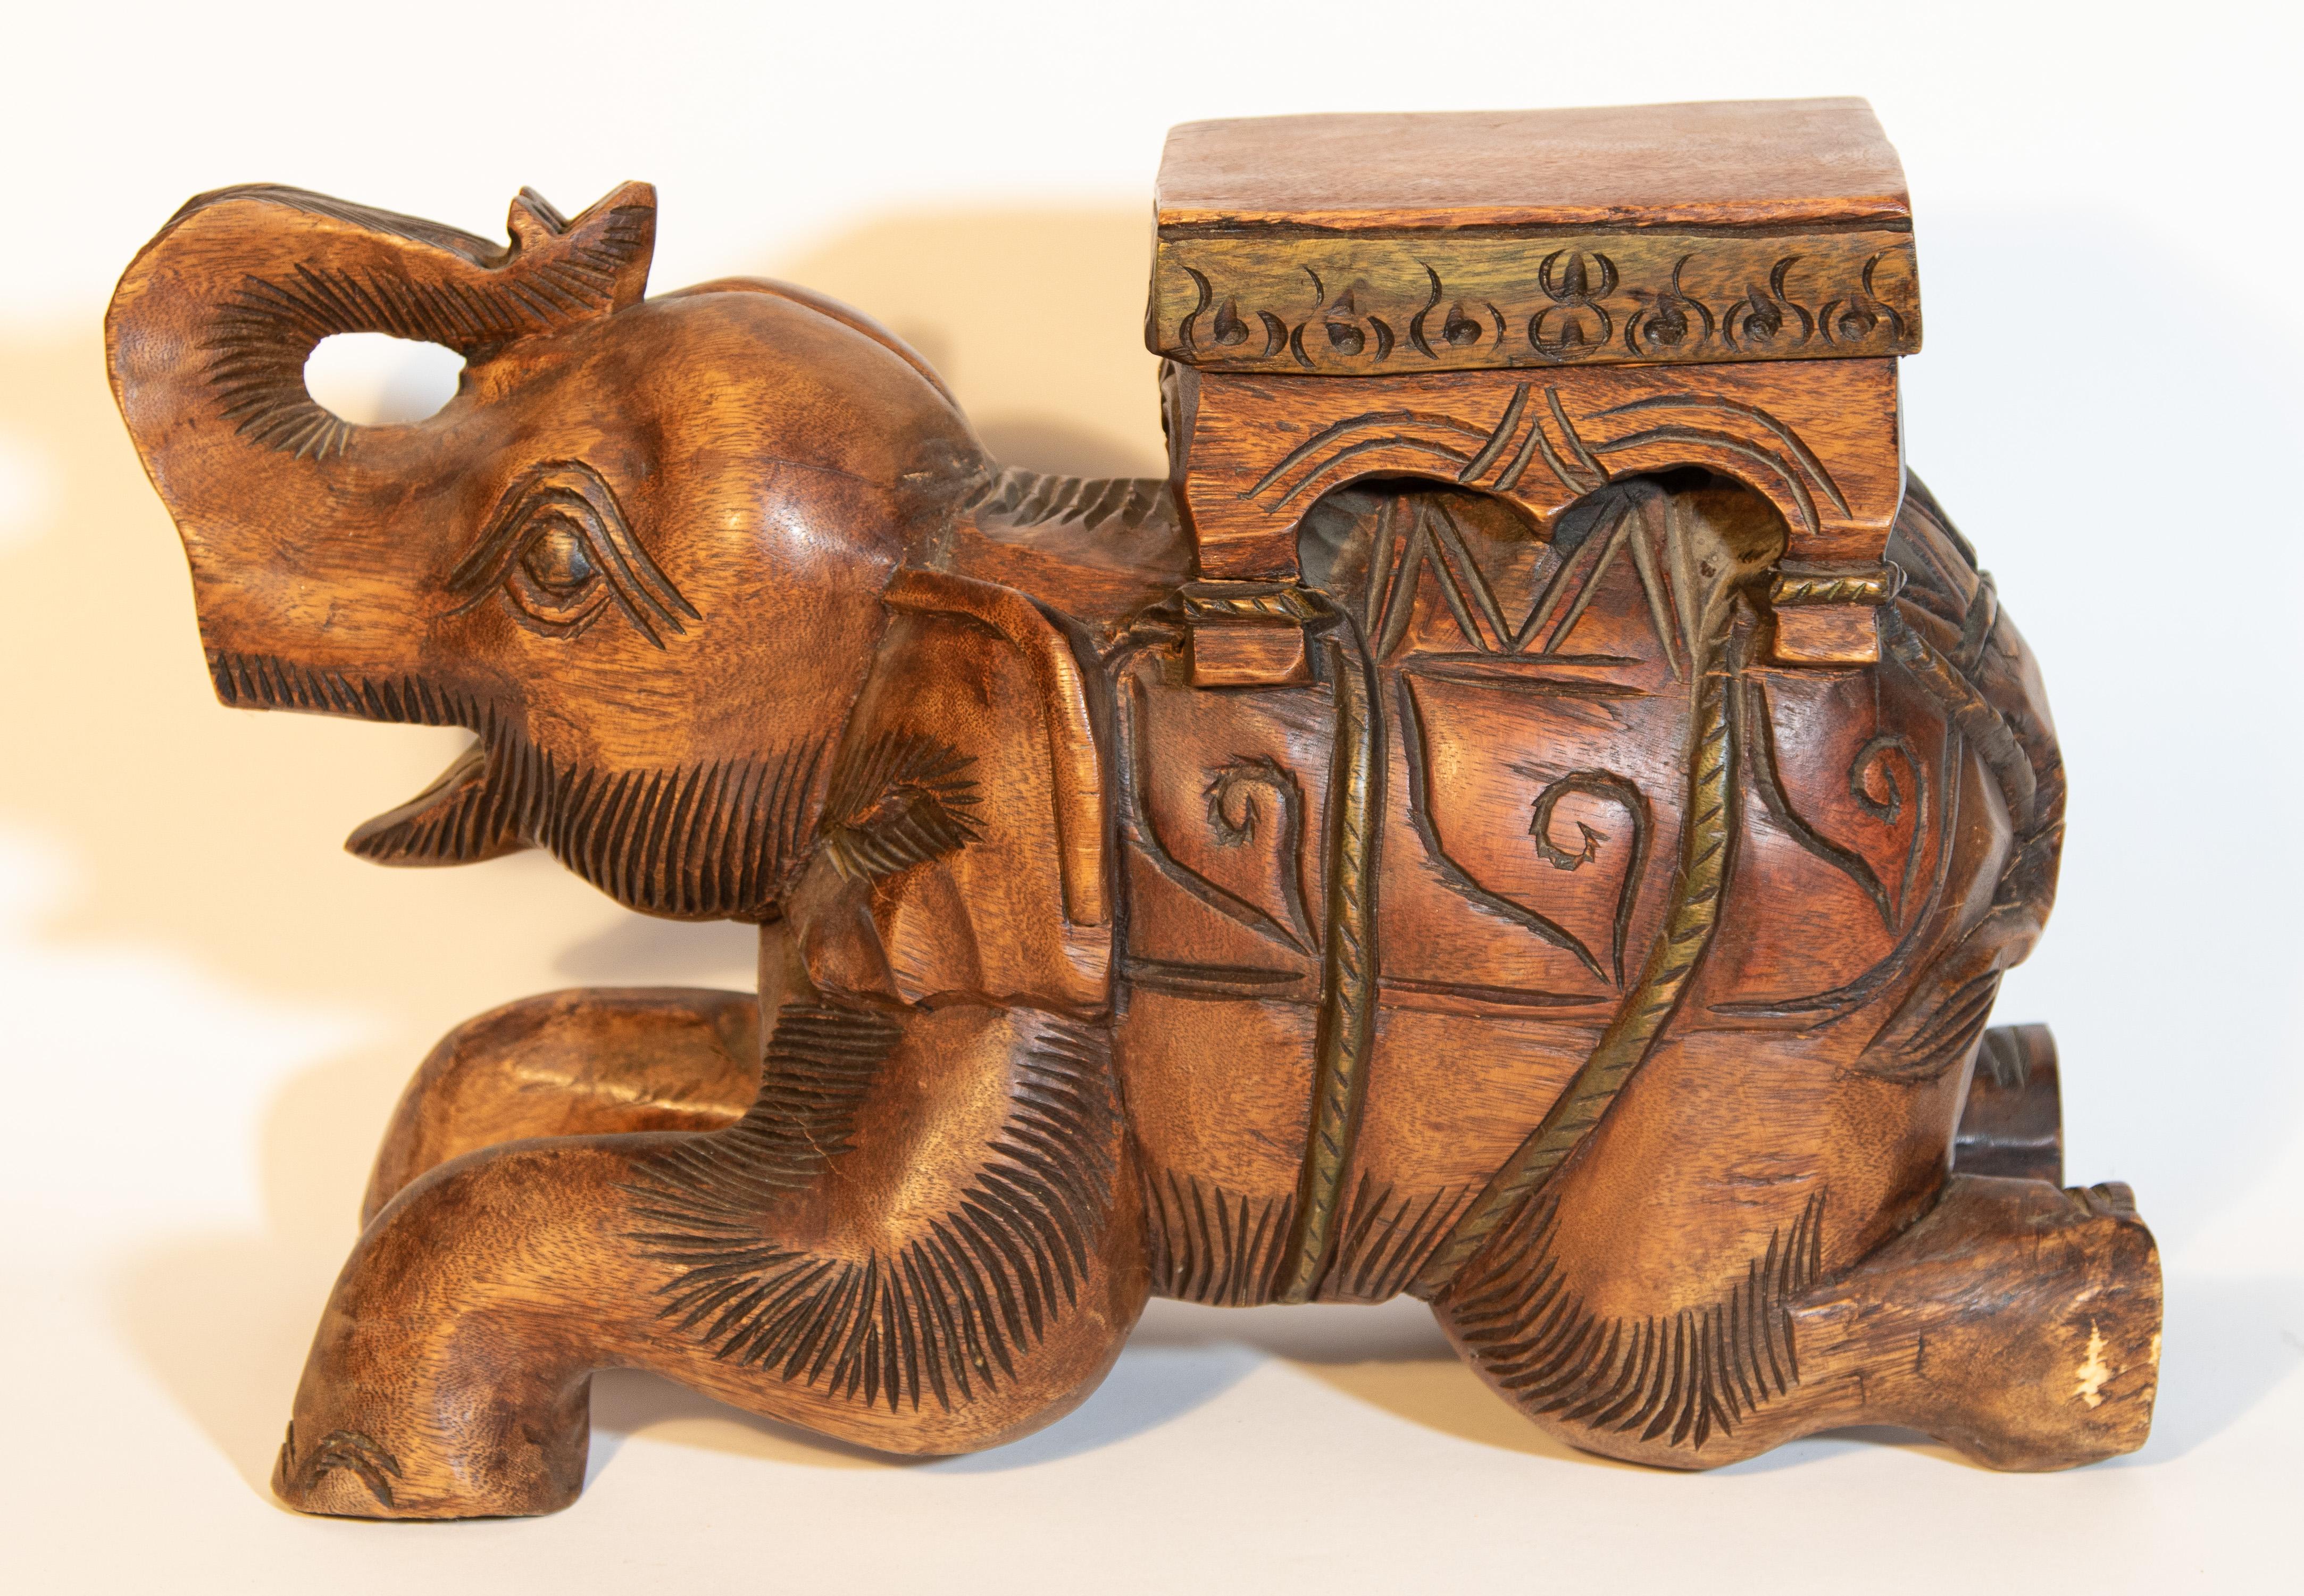 Tabouret d'éléphant vintage en bois d'Asie du Sud sculpté à la main, ou table d'appoint, très beau sculpté à la main sur une seule pièce de bois.
Peut être utilisé comme table d'appoint, avec un morceau de verre ou un support de plantes.
Table